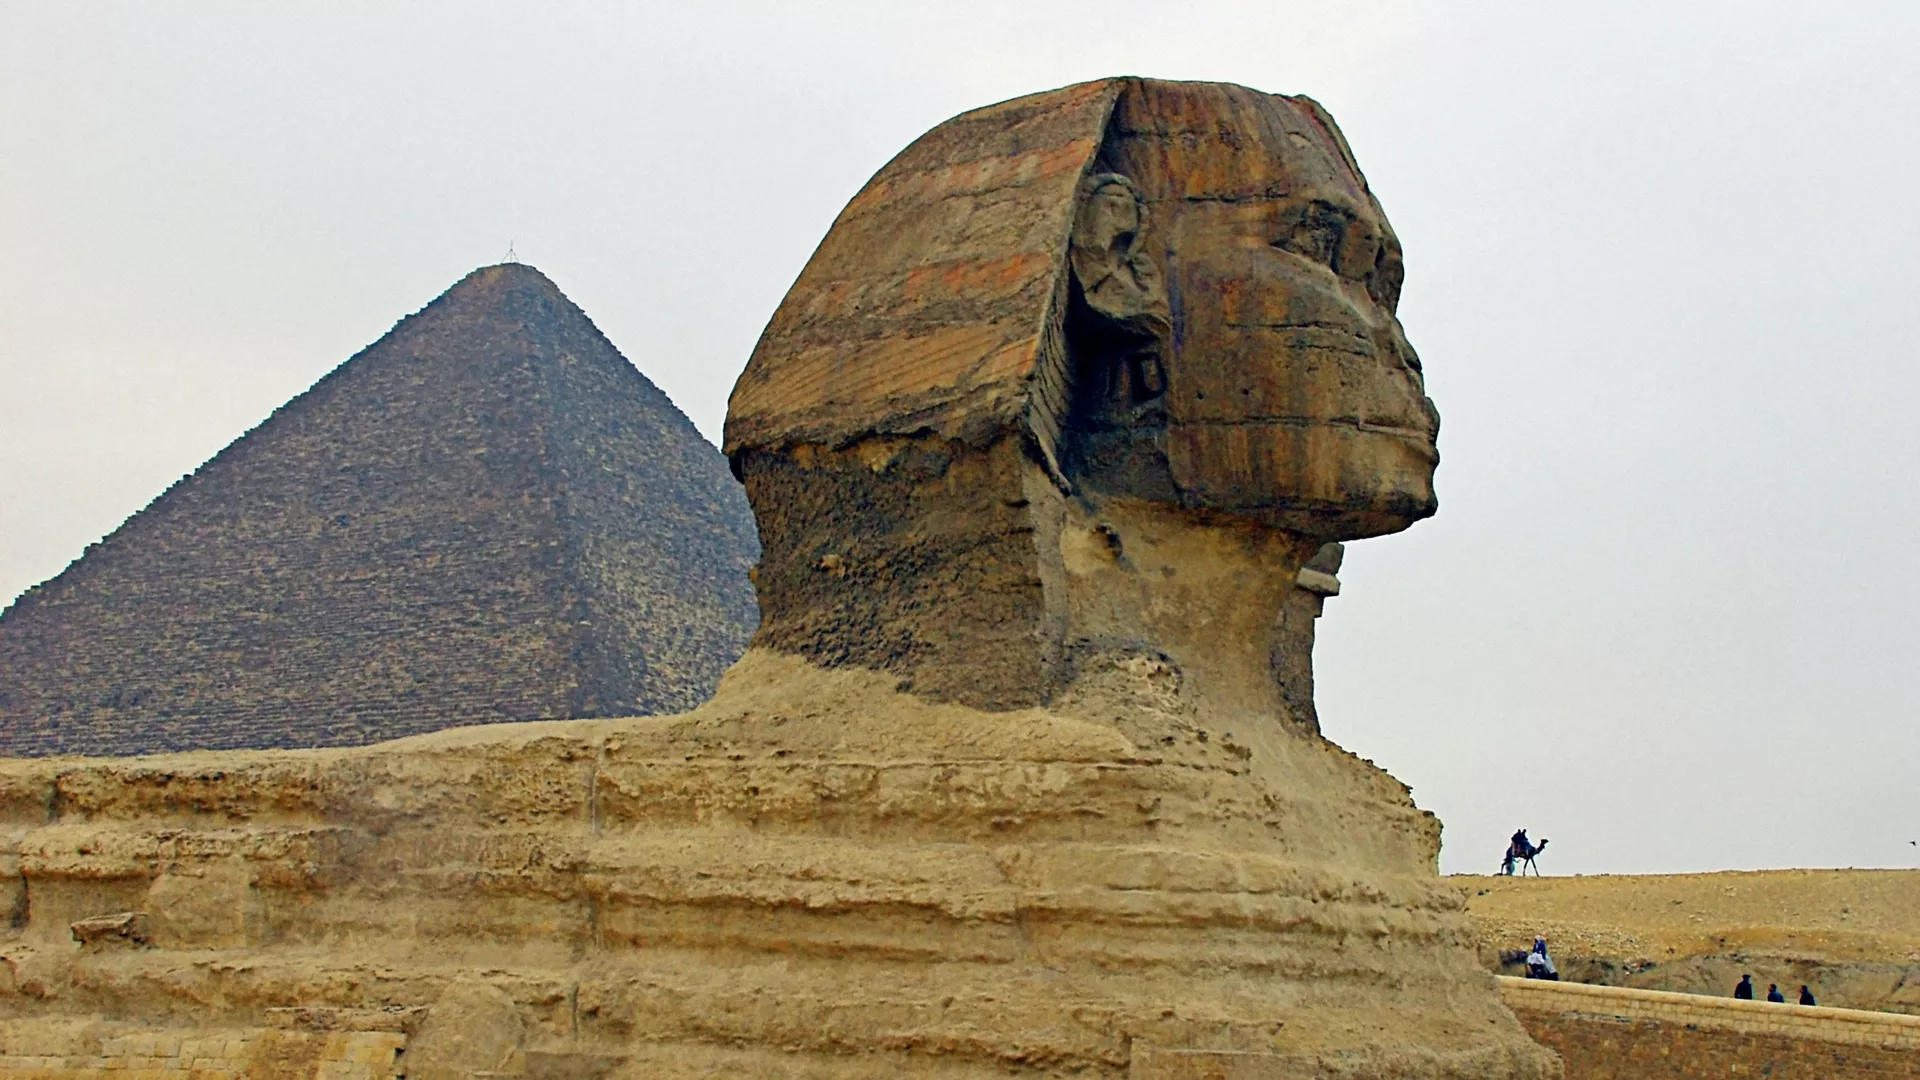 Сфинкс и пирамида Хеопса в Долине Гиза в Египте - РИА Новости, 1920, 19.10.2020